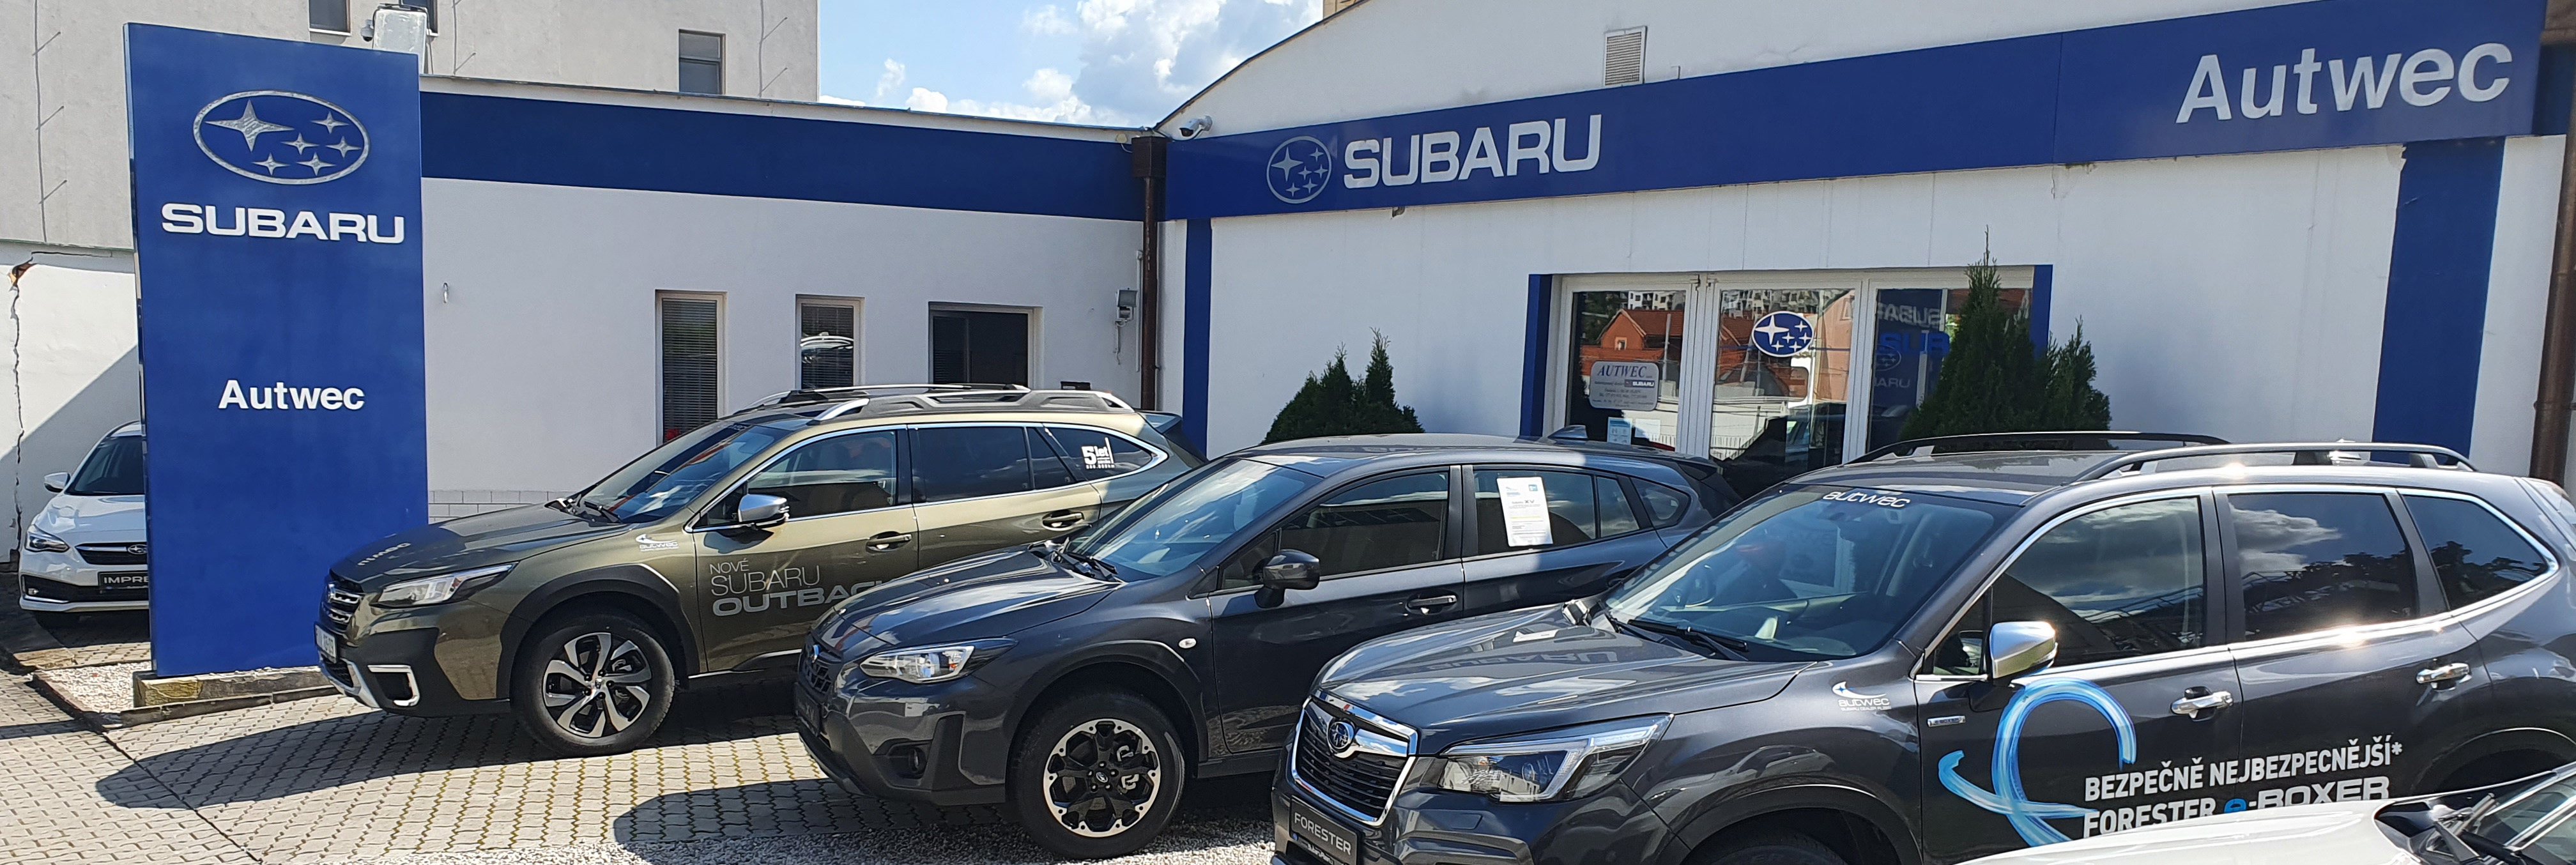 Subaru Autwec